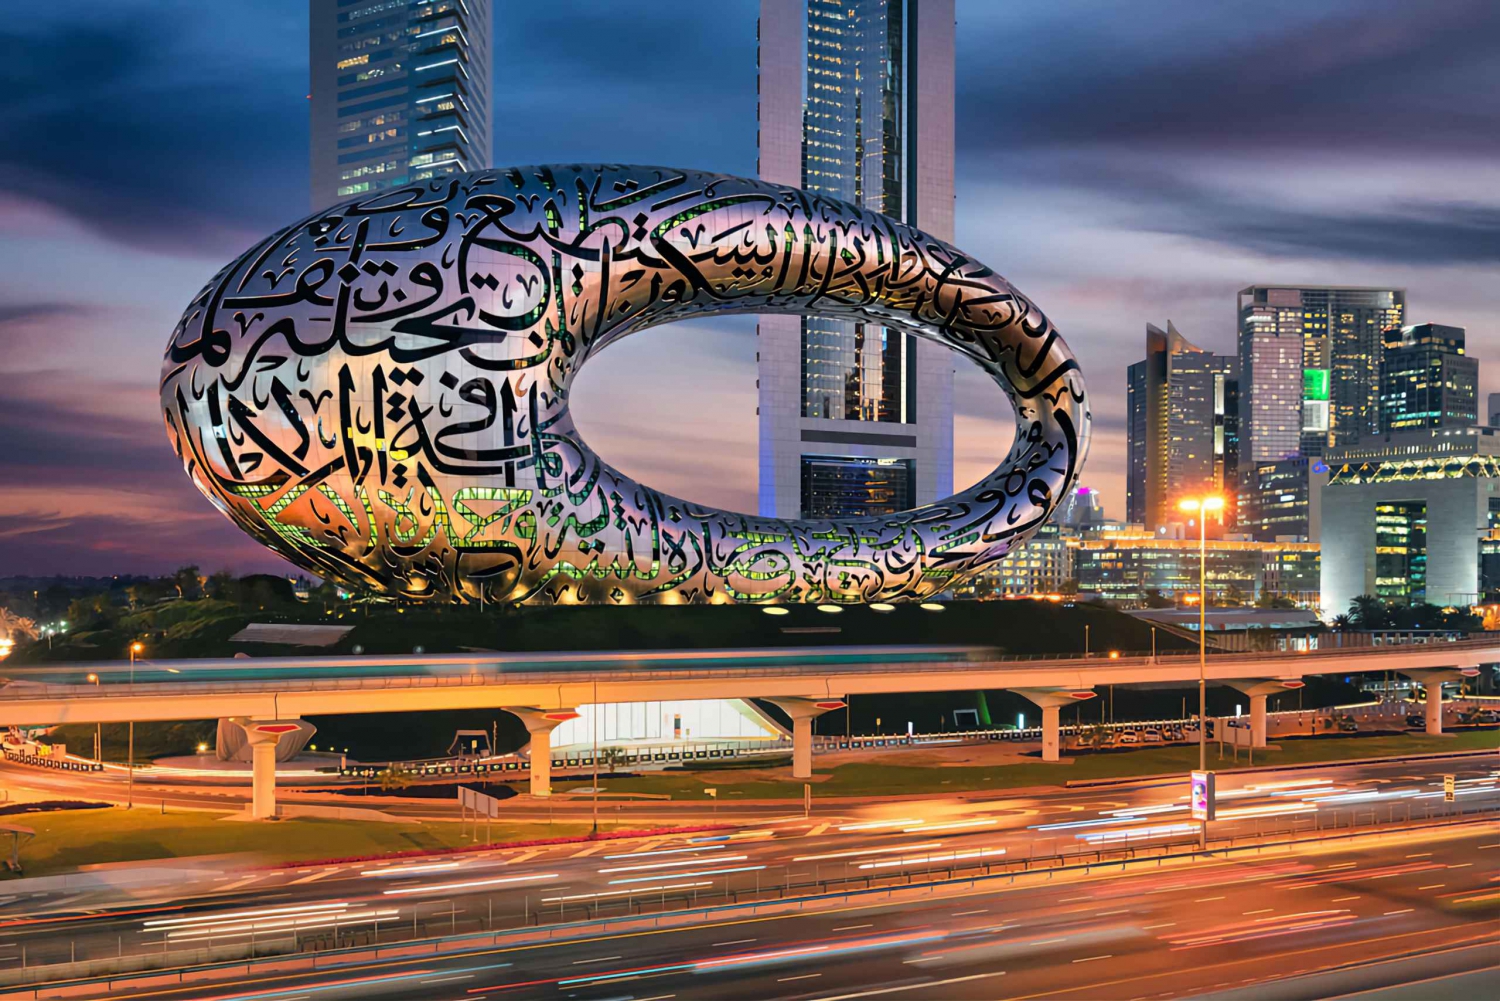 Dubaï : Visite de la ville avec escale et horaires flexibles